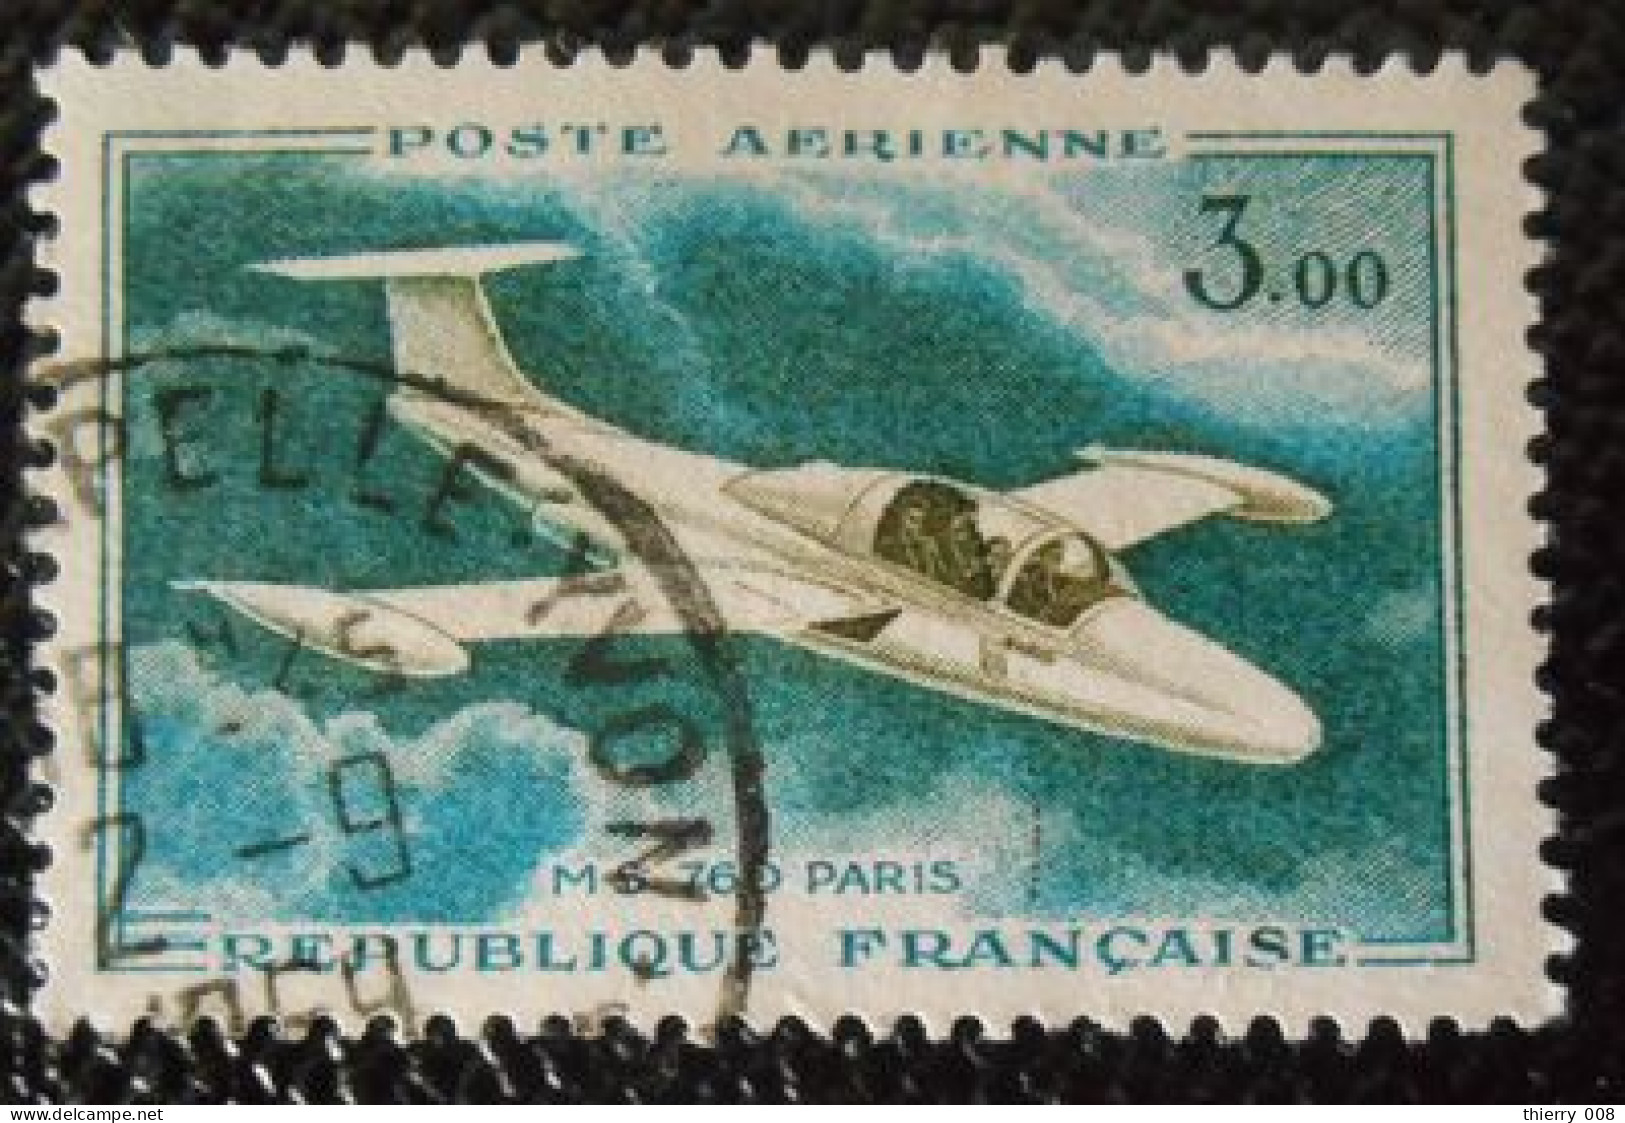 France 1960 1964 Poste Aérienne PA 39 Prototypes Morane Saulnier 760 Paris  Oblitéré - 1960-.... Oblitérés